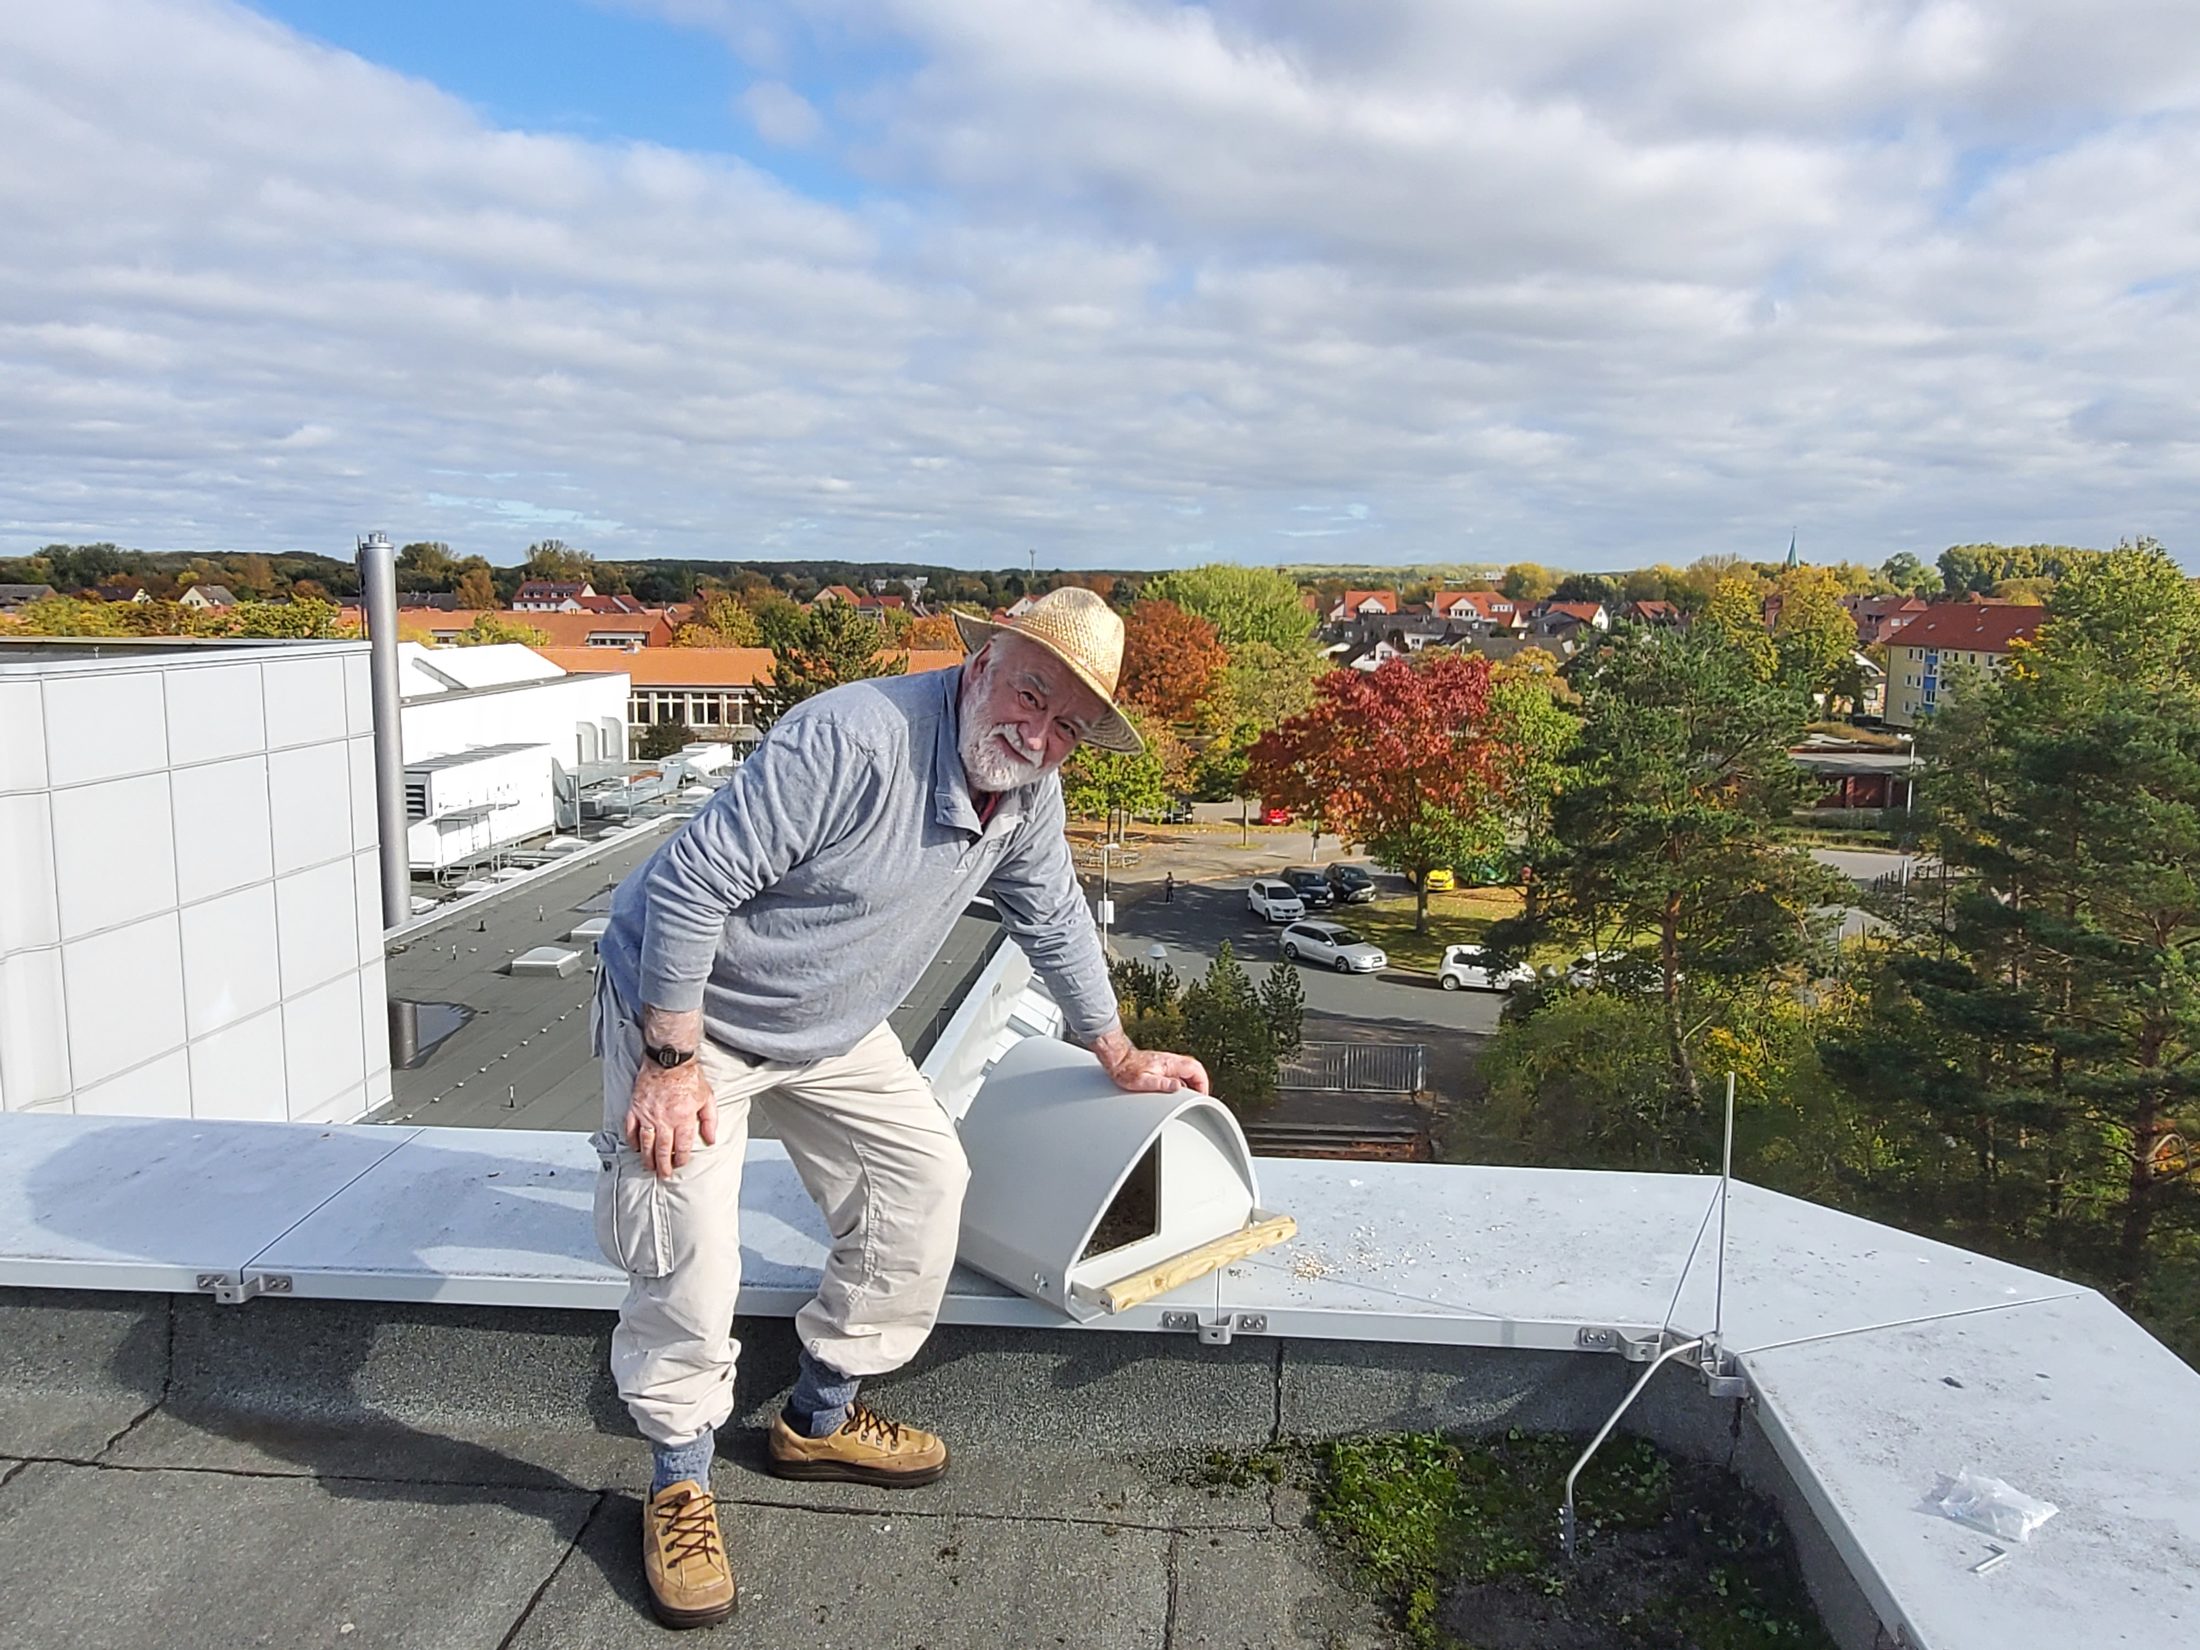 Auf dem Dach der Schule wurde ein Nistkasten für Turmfalken angebracht. (Wird bei Klick vergrößert)